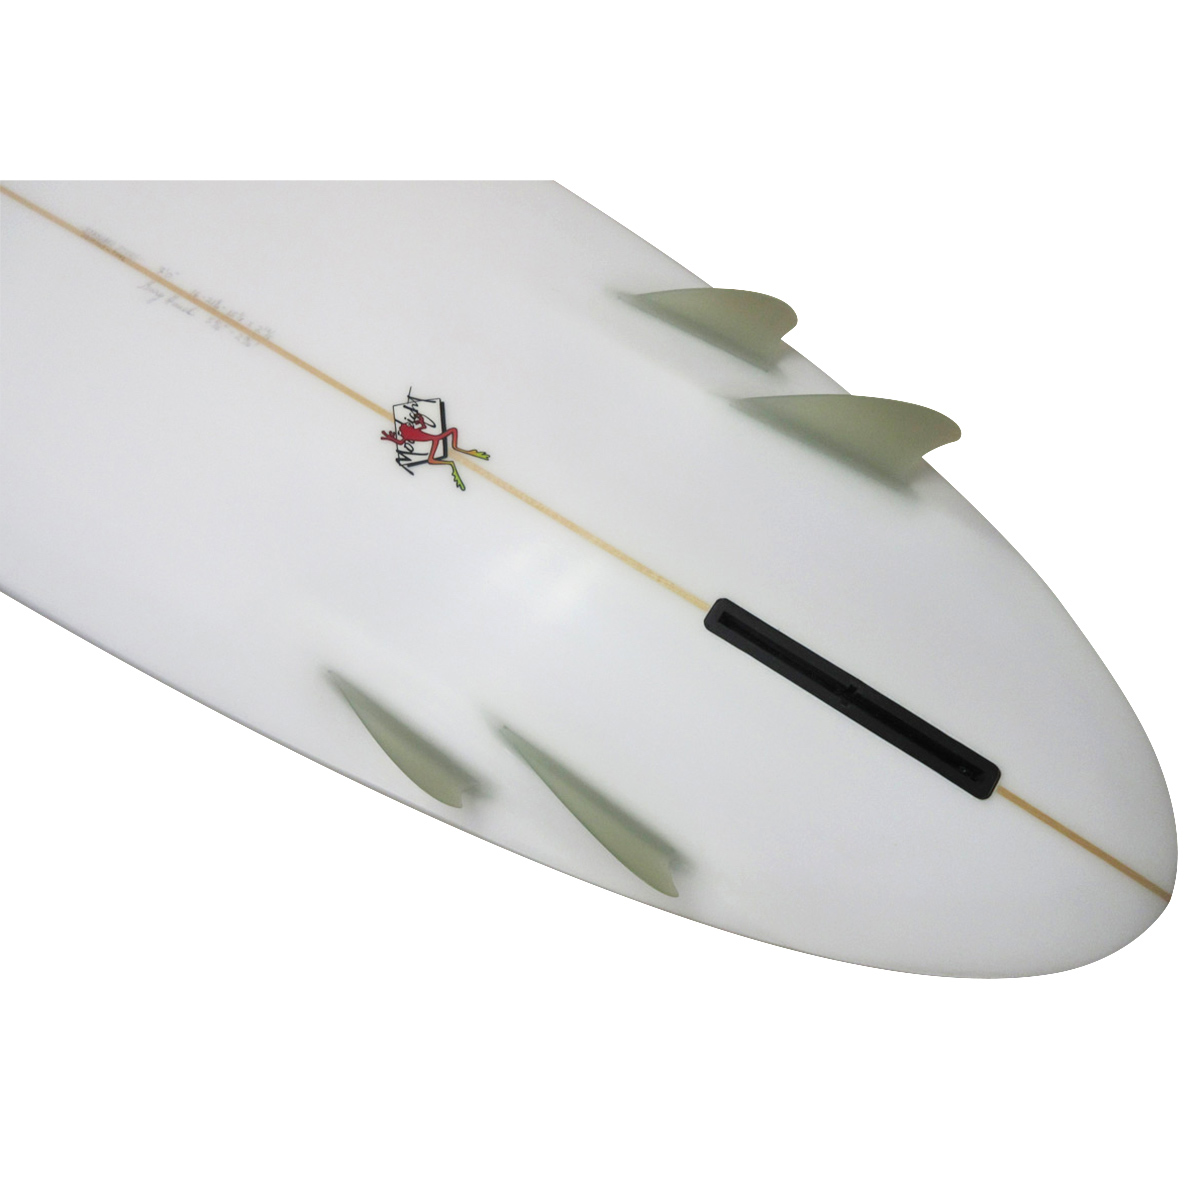 Gary Hanel Surfboards : Bonzer Egg